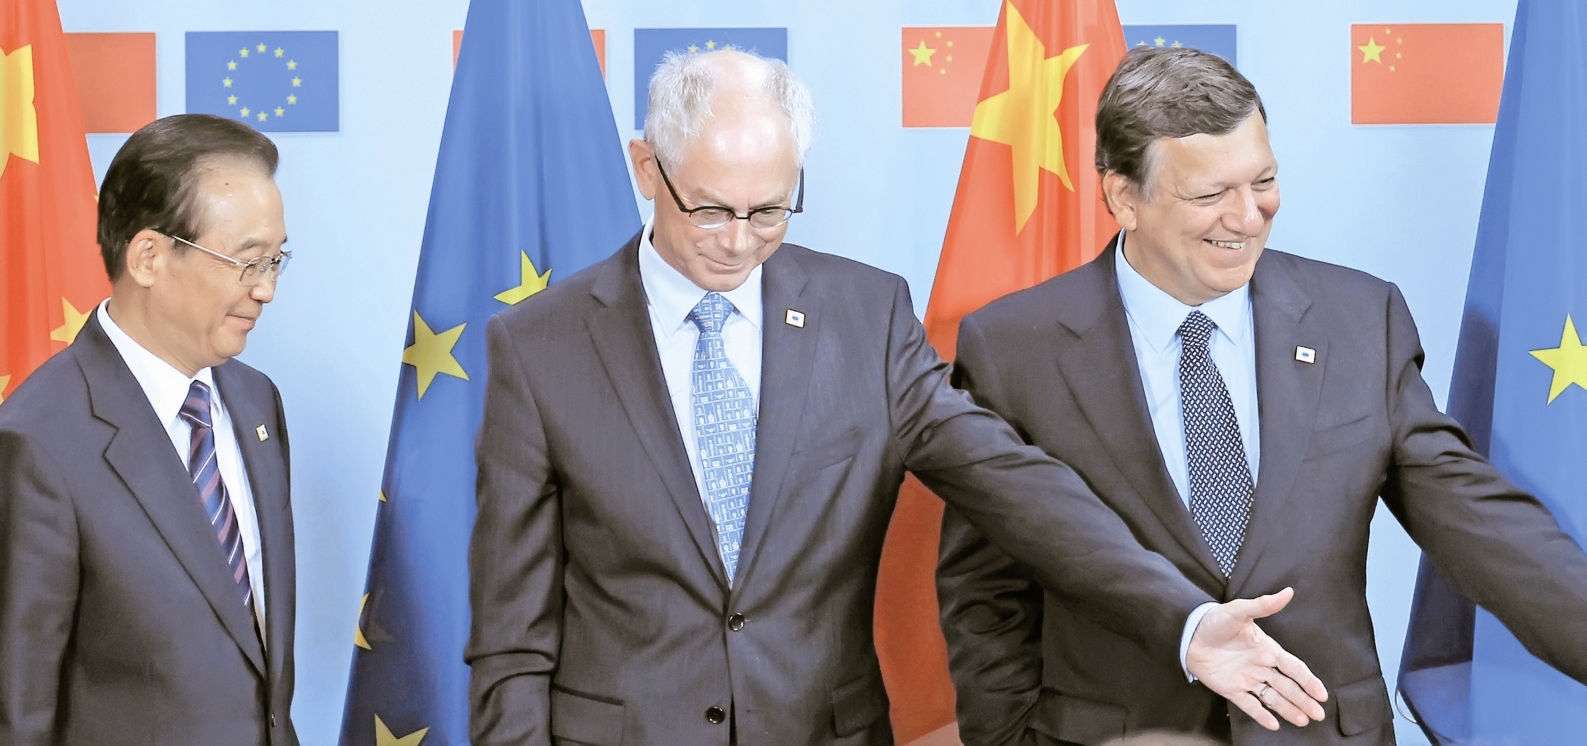 رهبران اروپای بحران زده برای دریافت کمک مالی از چین در یک سال گذشته ساعت‌ها با نخست وزیر چین گفت‌و گ